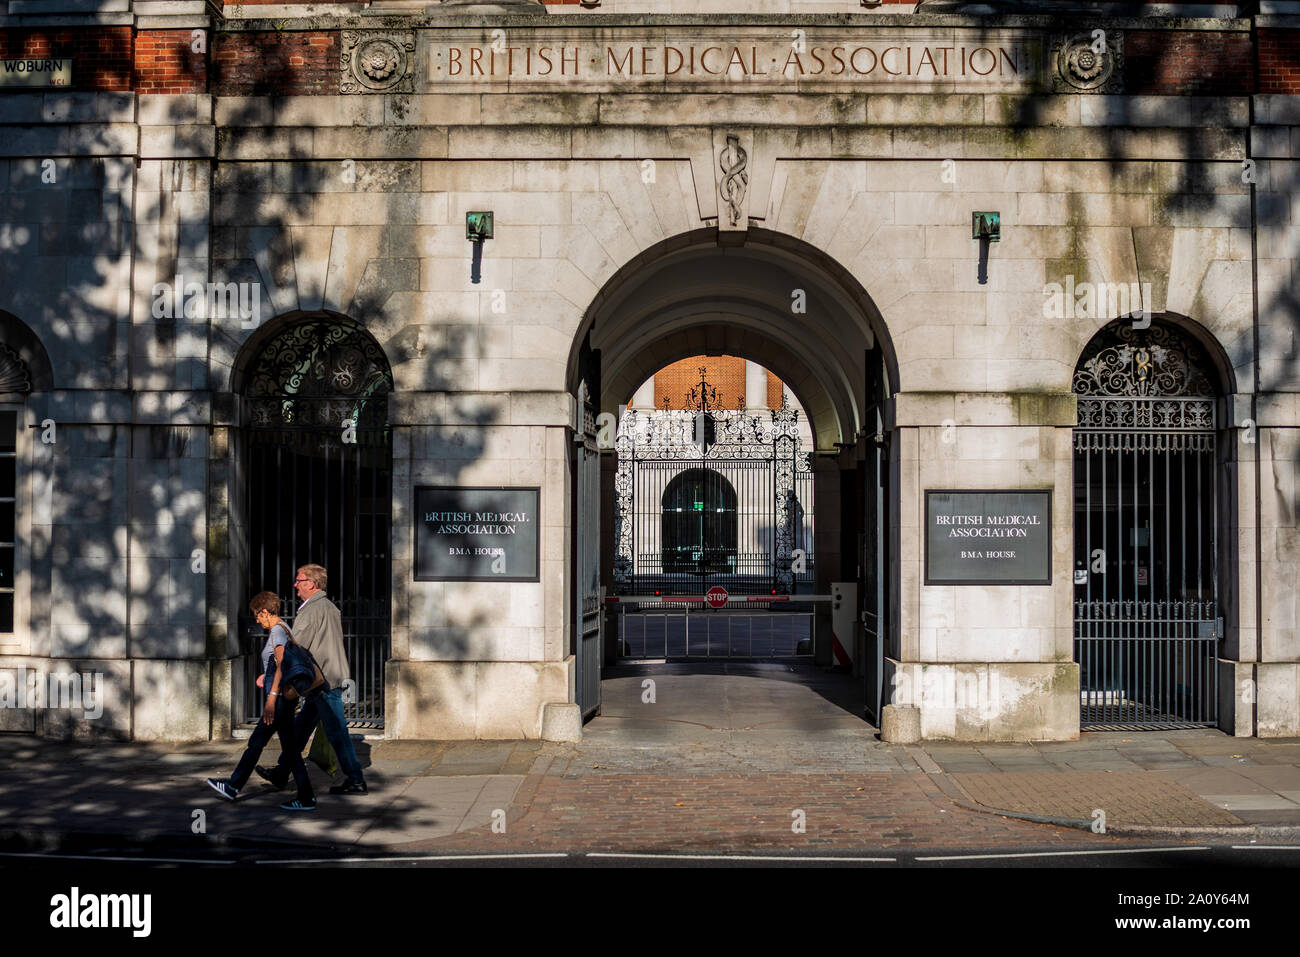 Die British Medical Association oder der Hauptsitz von BMA im BMA House Tavistock Square Bloomsbury Central London. BMA House Architekt Sir Edwin Lutyens, eröffnet 1925. Stockfoto